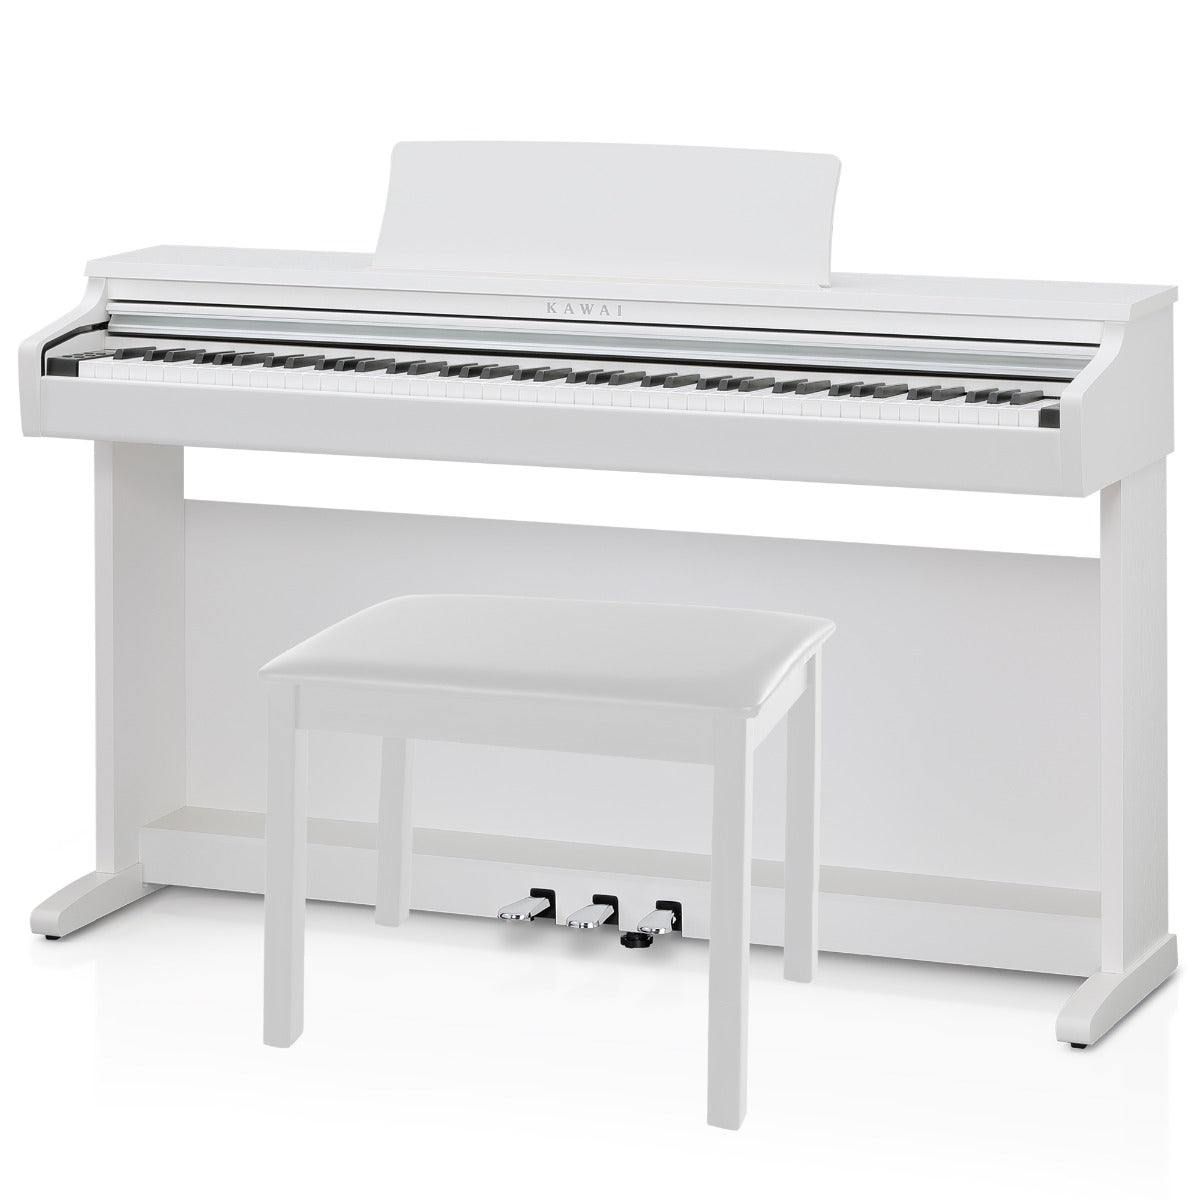 Image of Kawai KDP120 Digital Piano - White